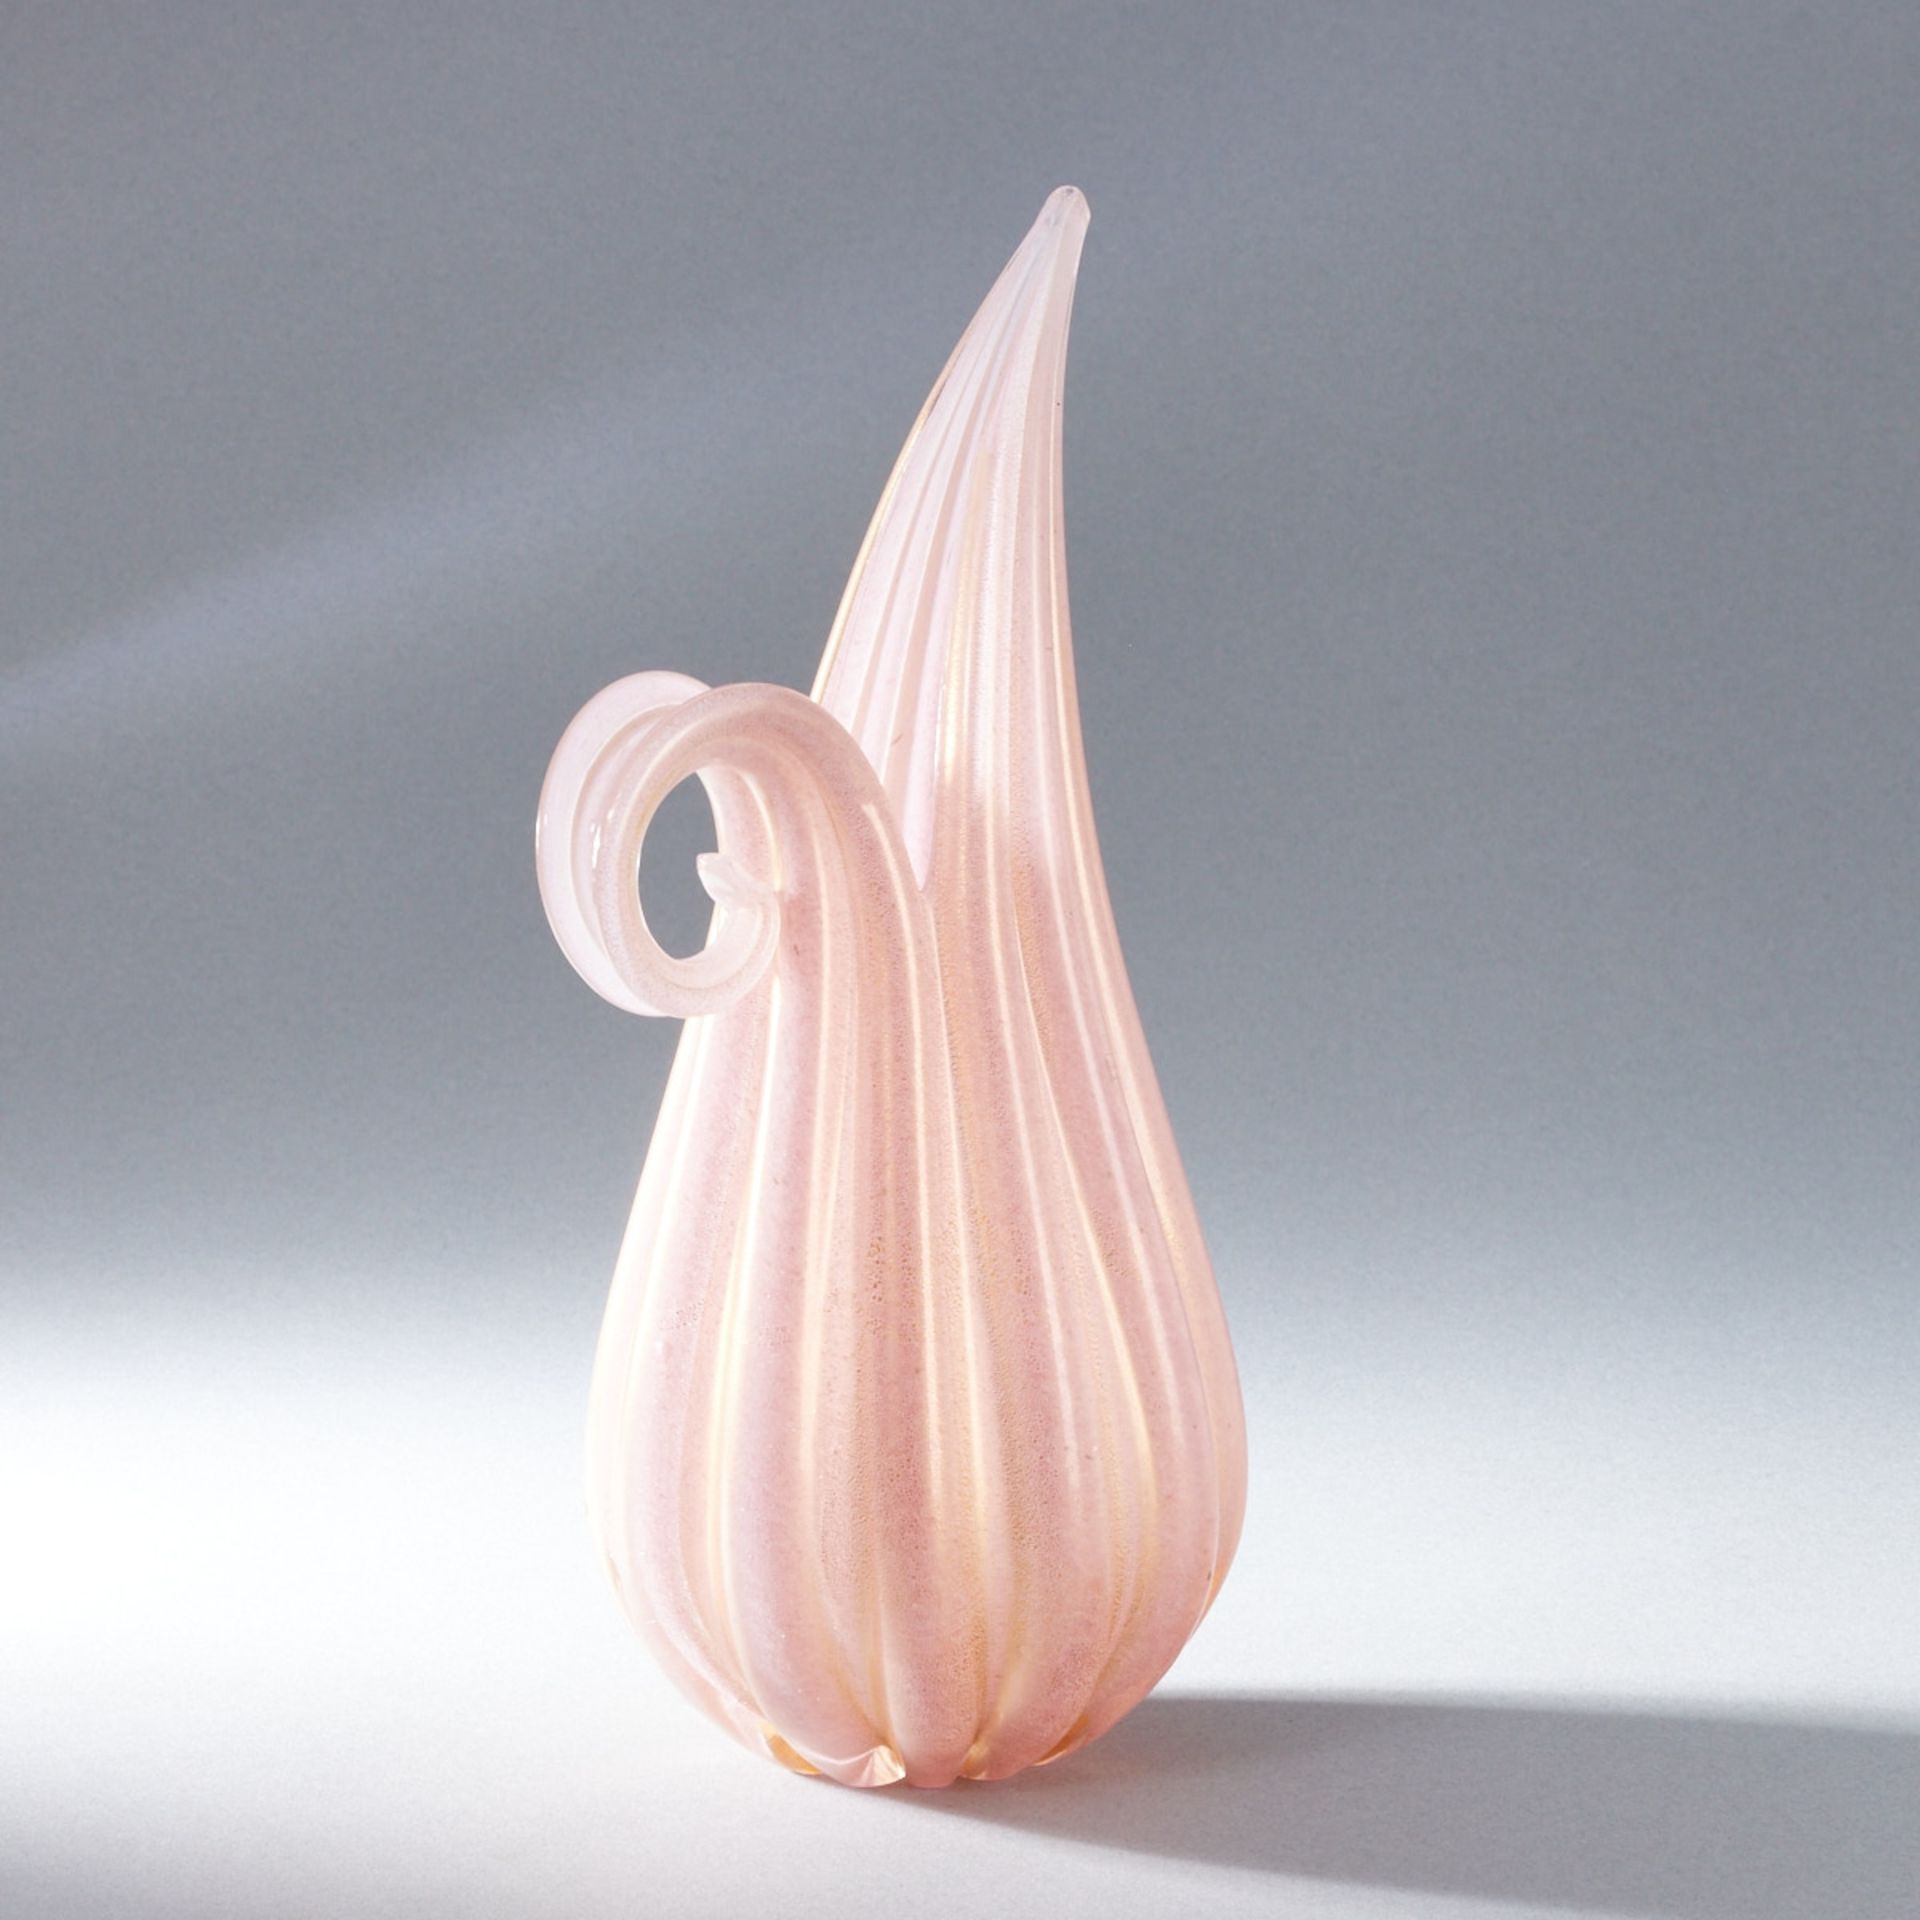 Vase mit hochgezogener Seite und gerolltem Griff. Barovier & Toso, Murano. - Image 2 of 3